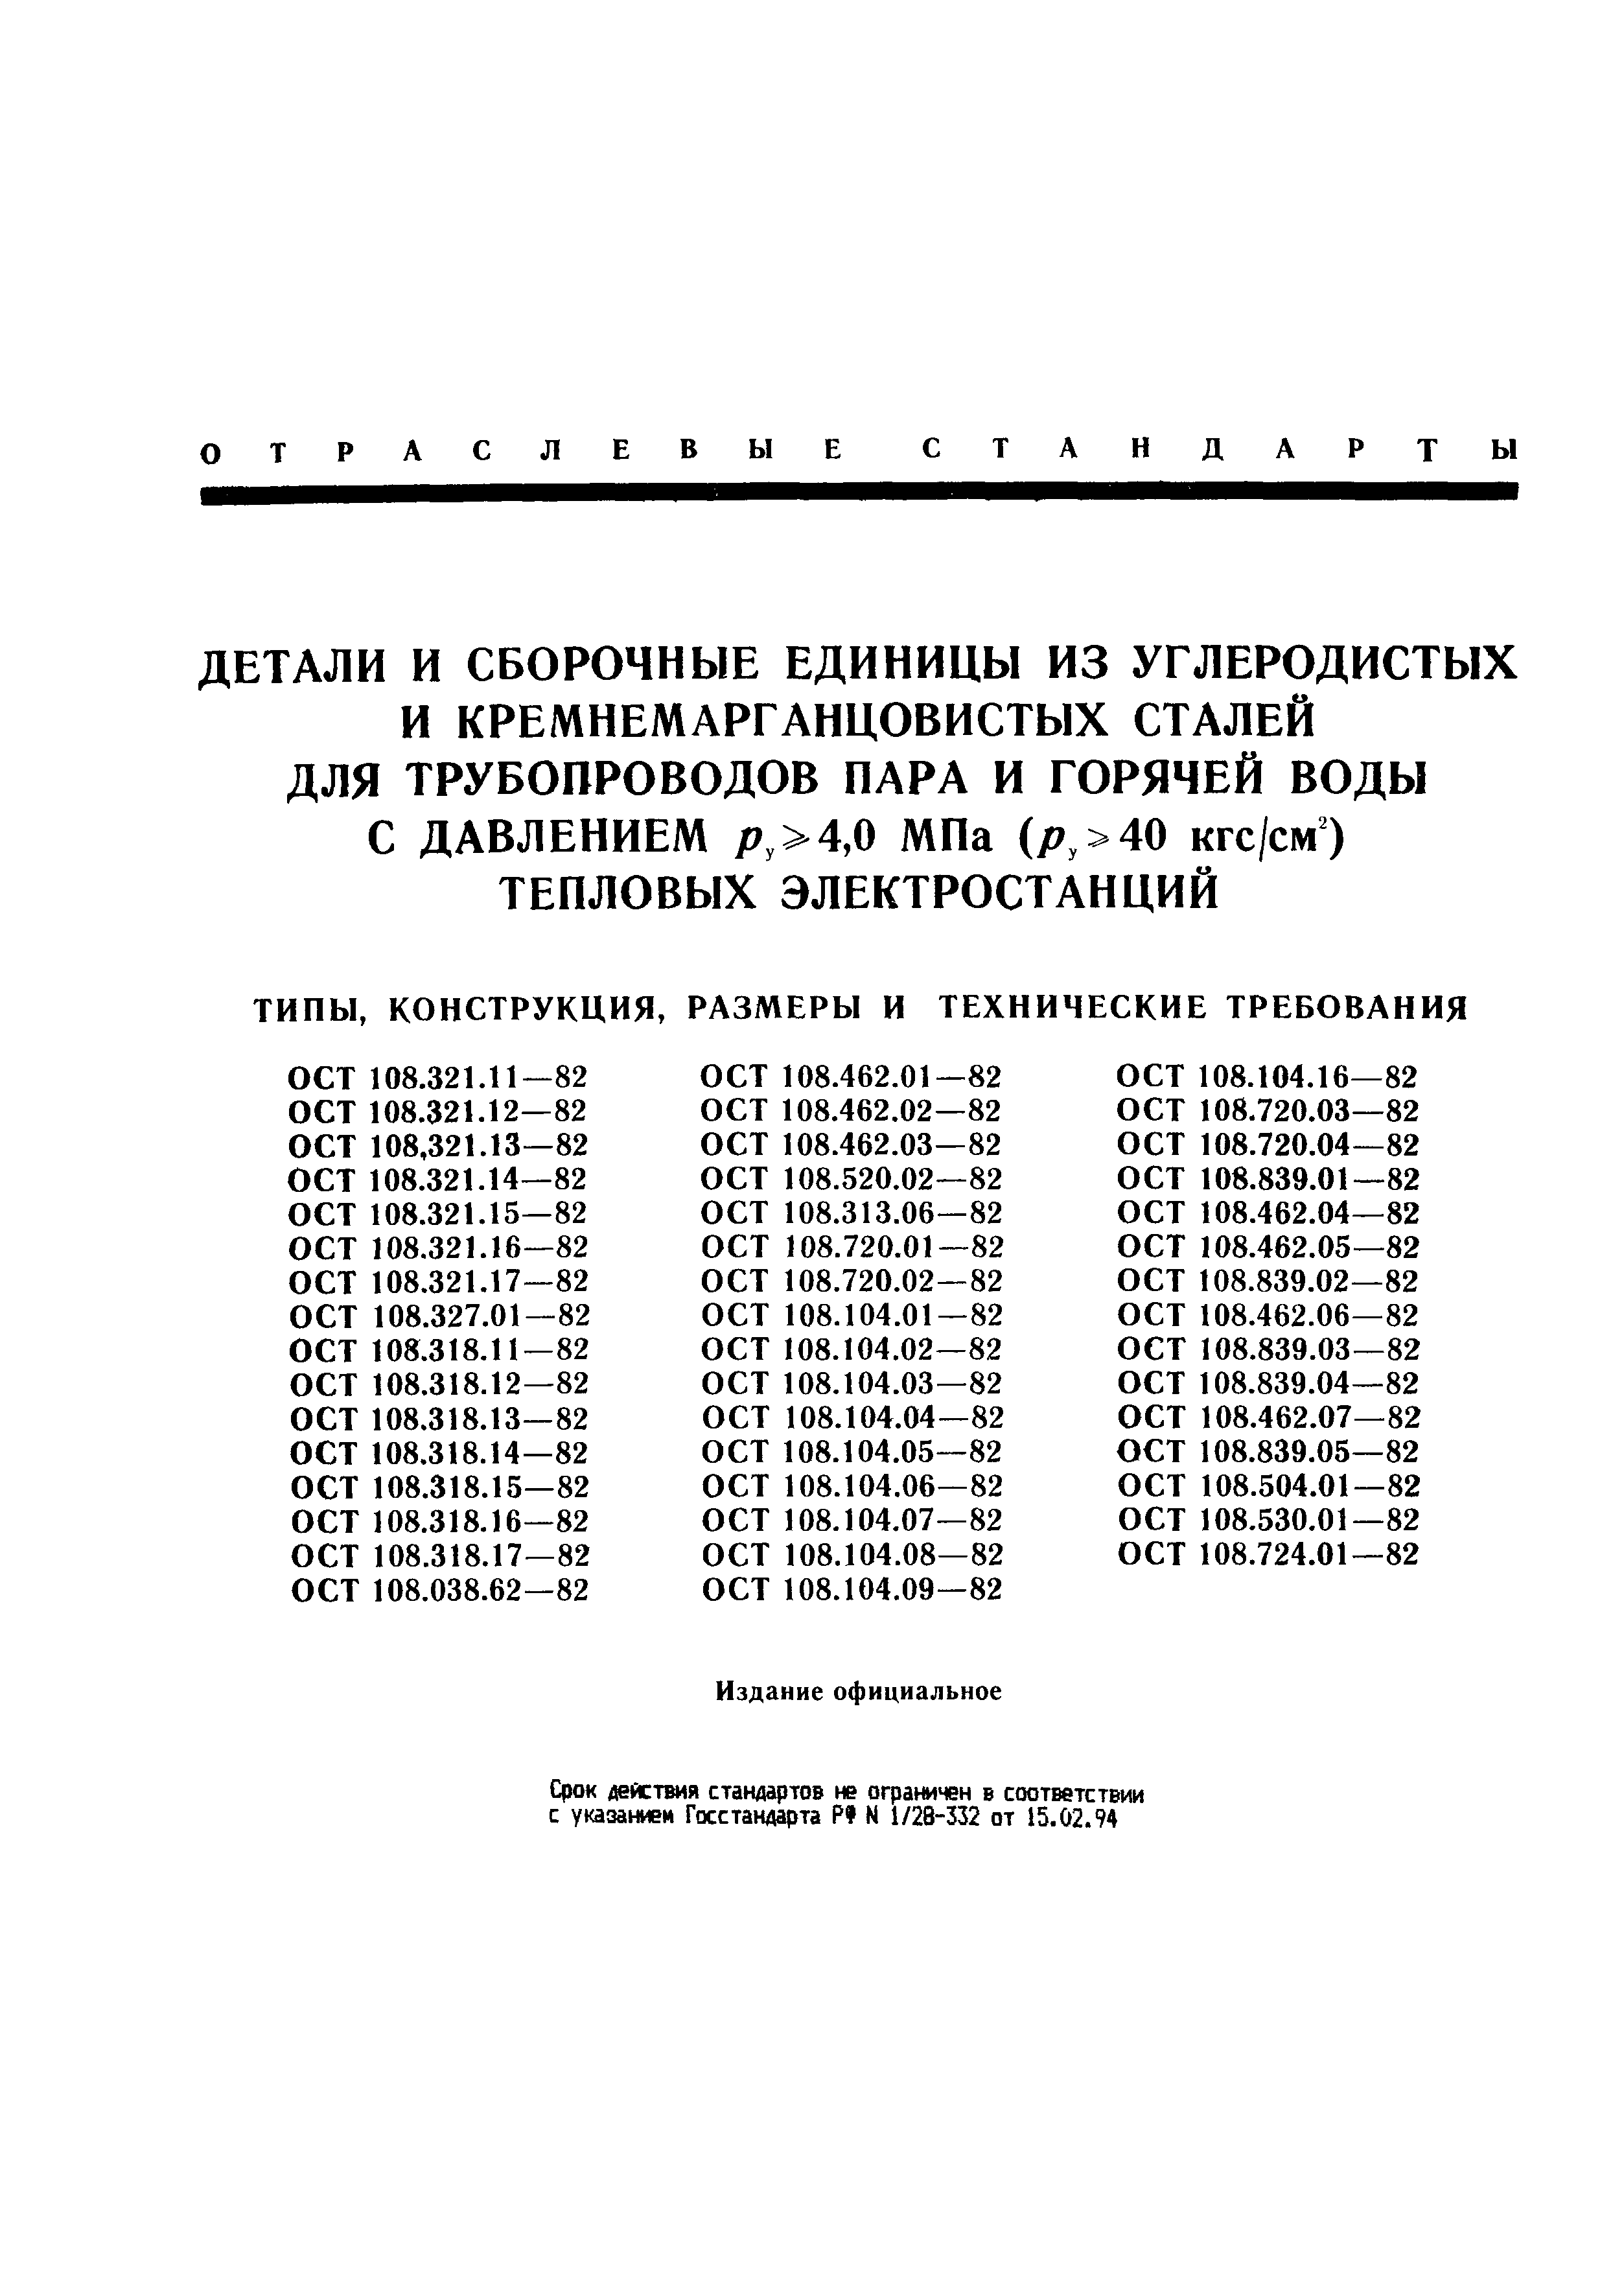 ОСТ 108.318.14-82